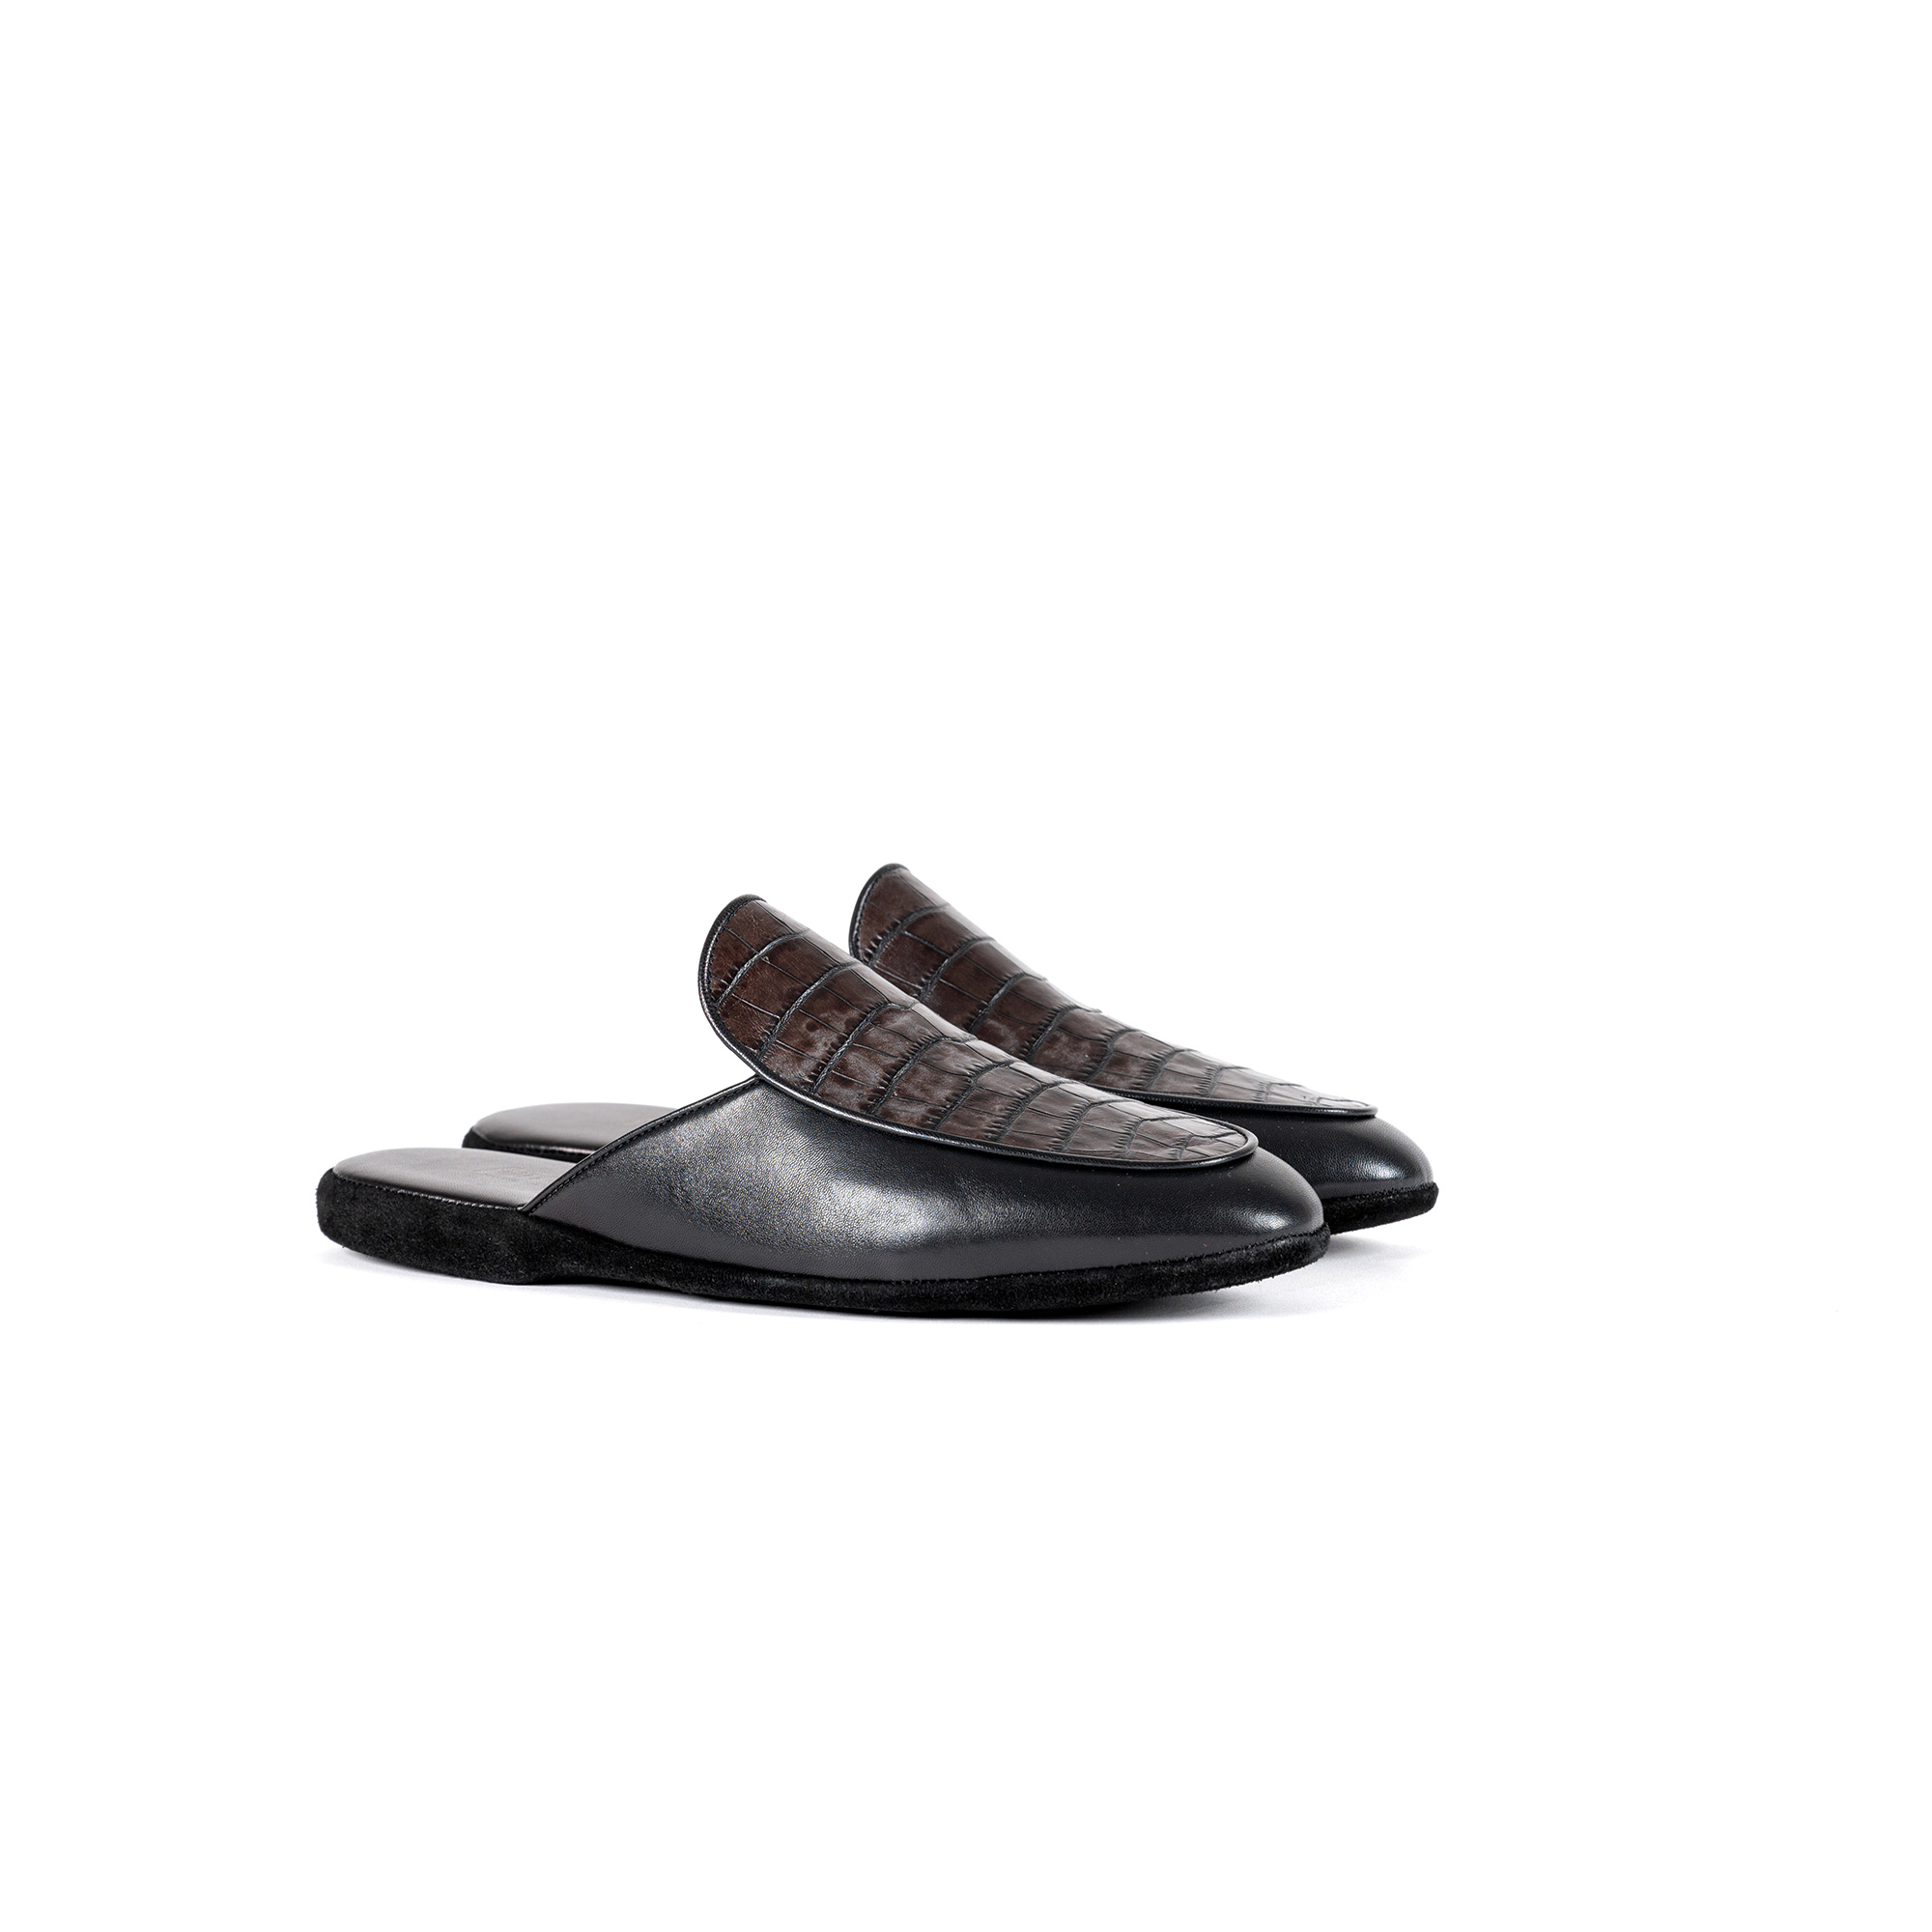 Indoor luxury slipper in Nappa leather - Farfalla italian slippers